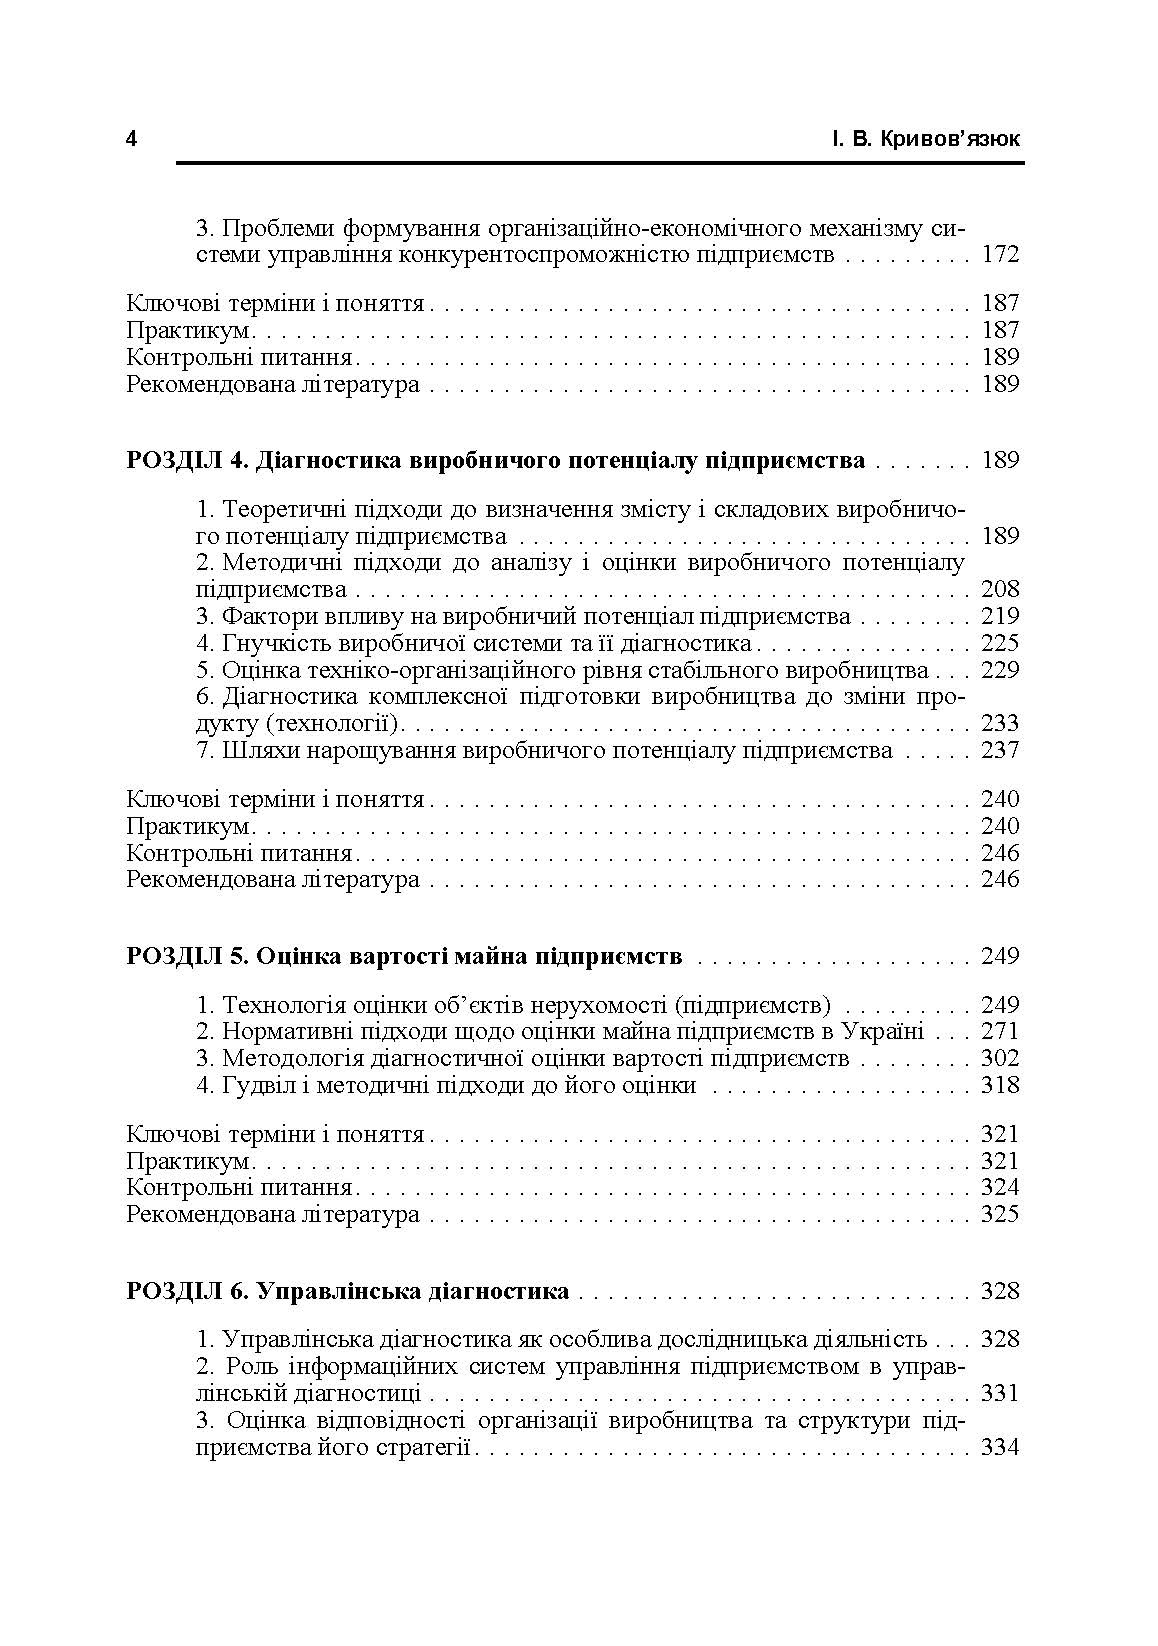 Економічна діагностика. (2019 год)). Автор — Кривов'язюк І.В.. 